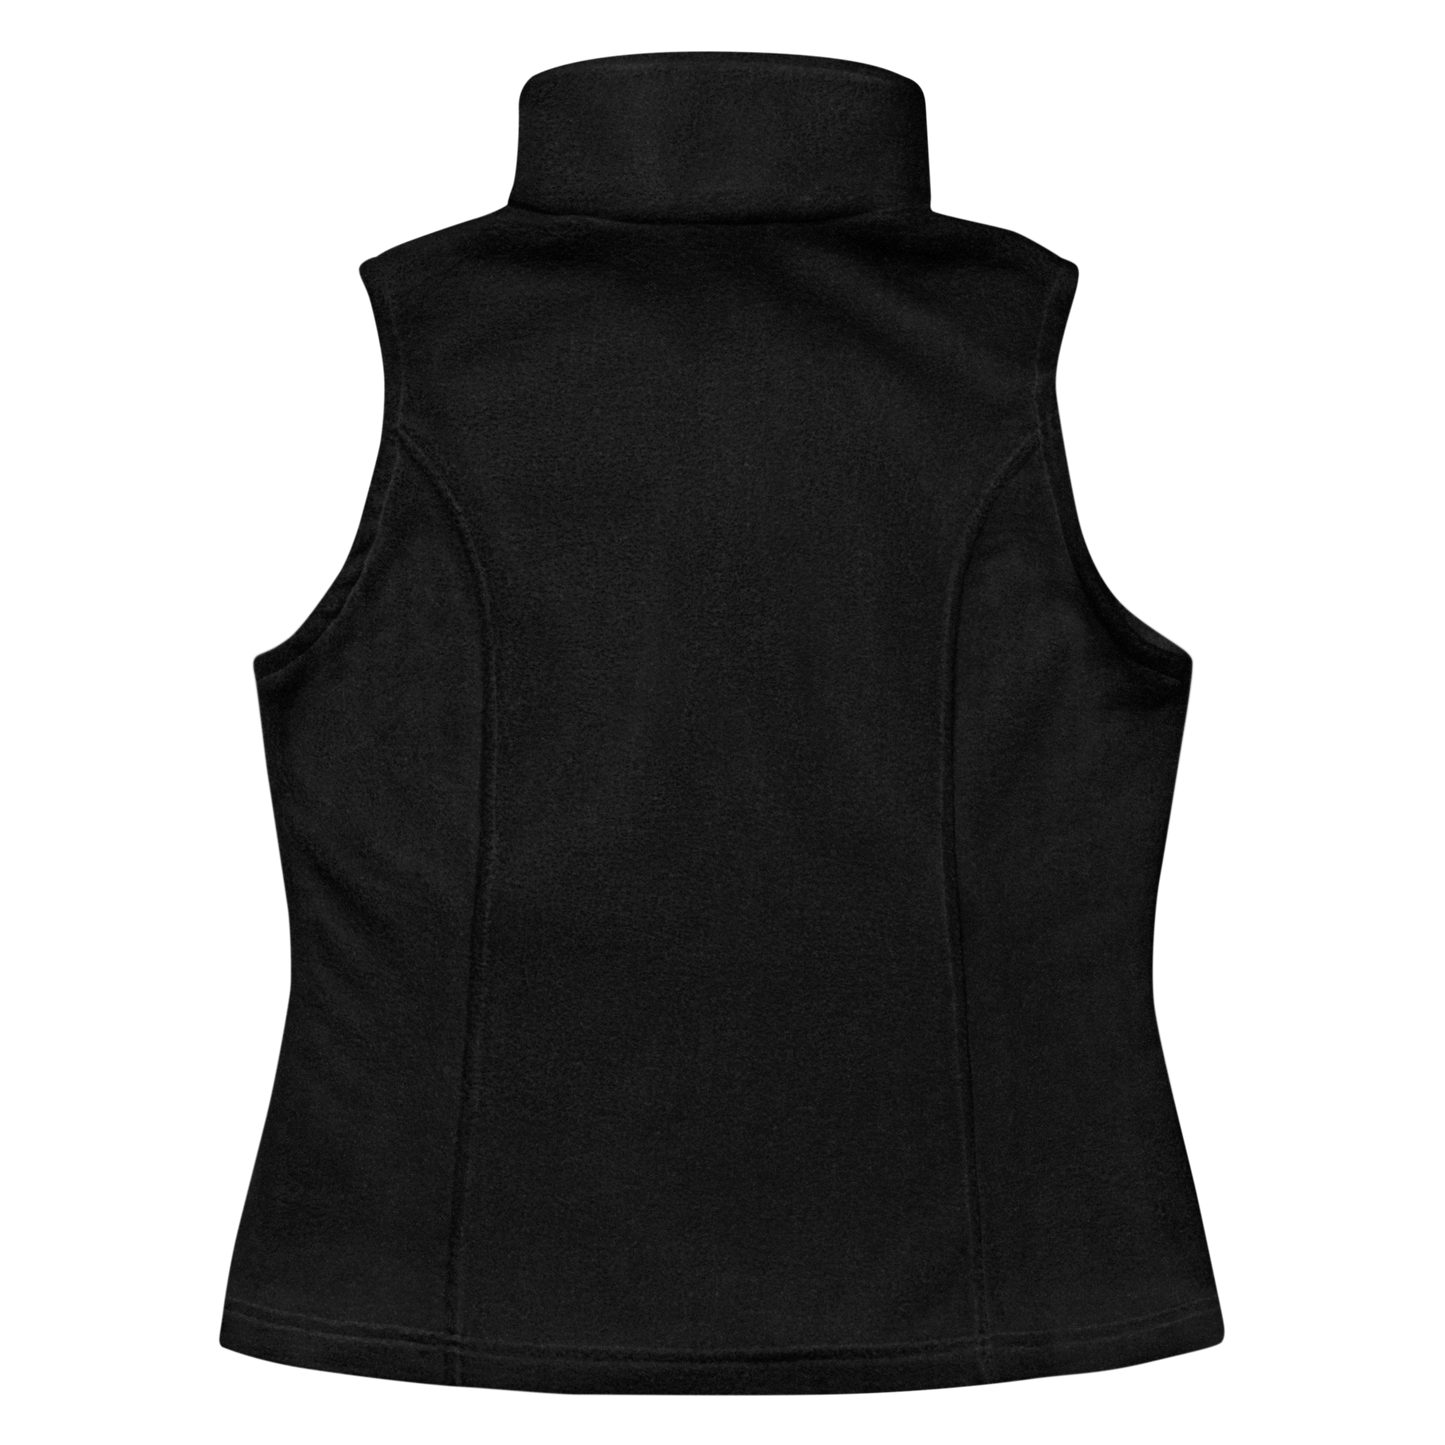 Women’s Columbia fleece vest